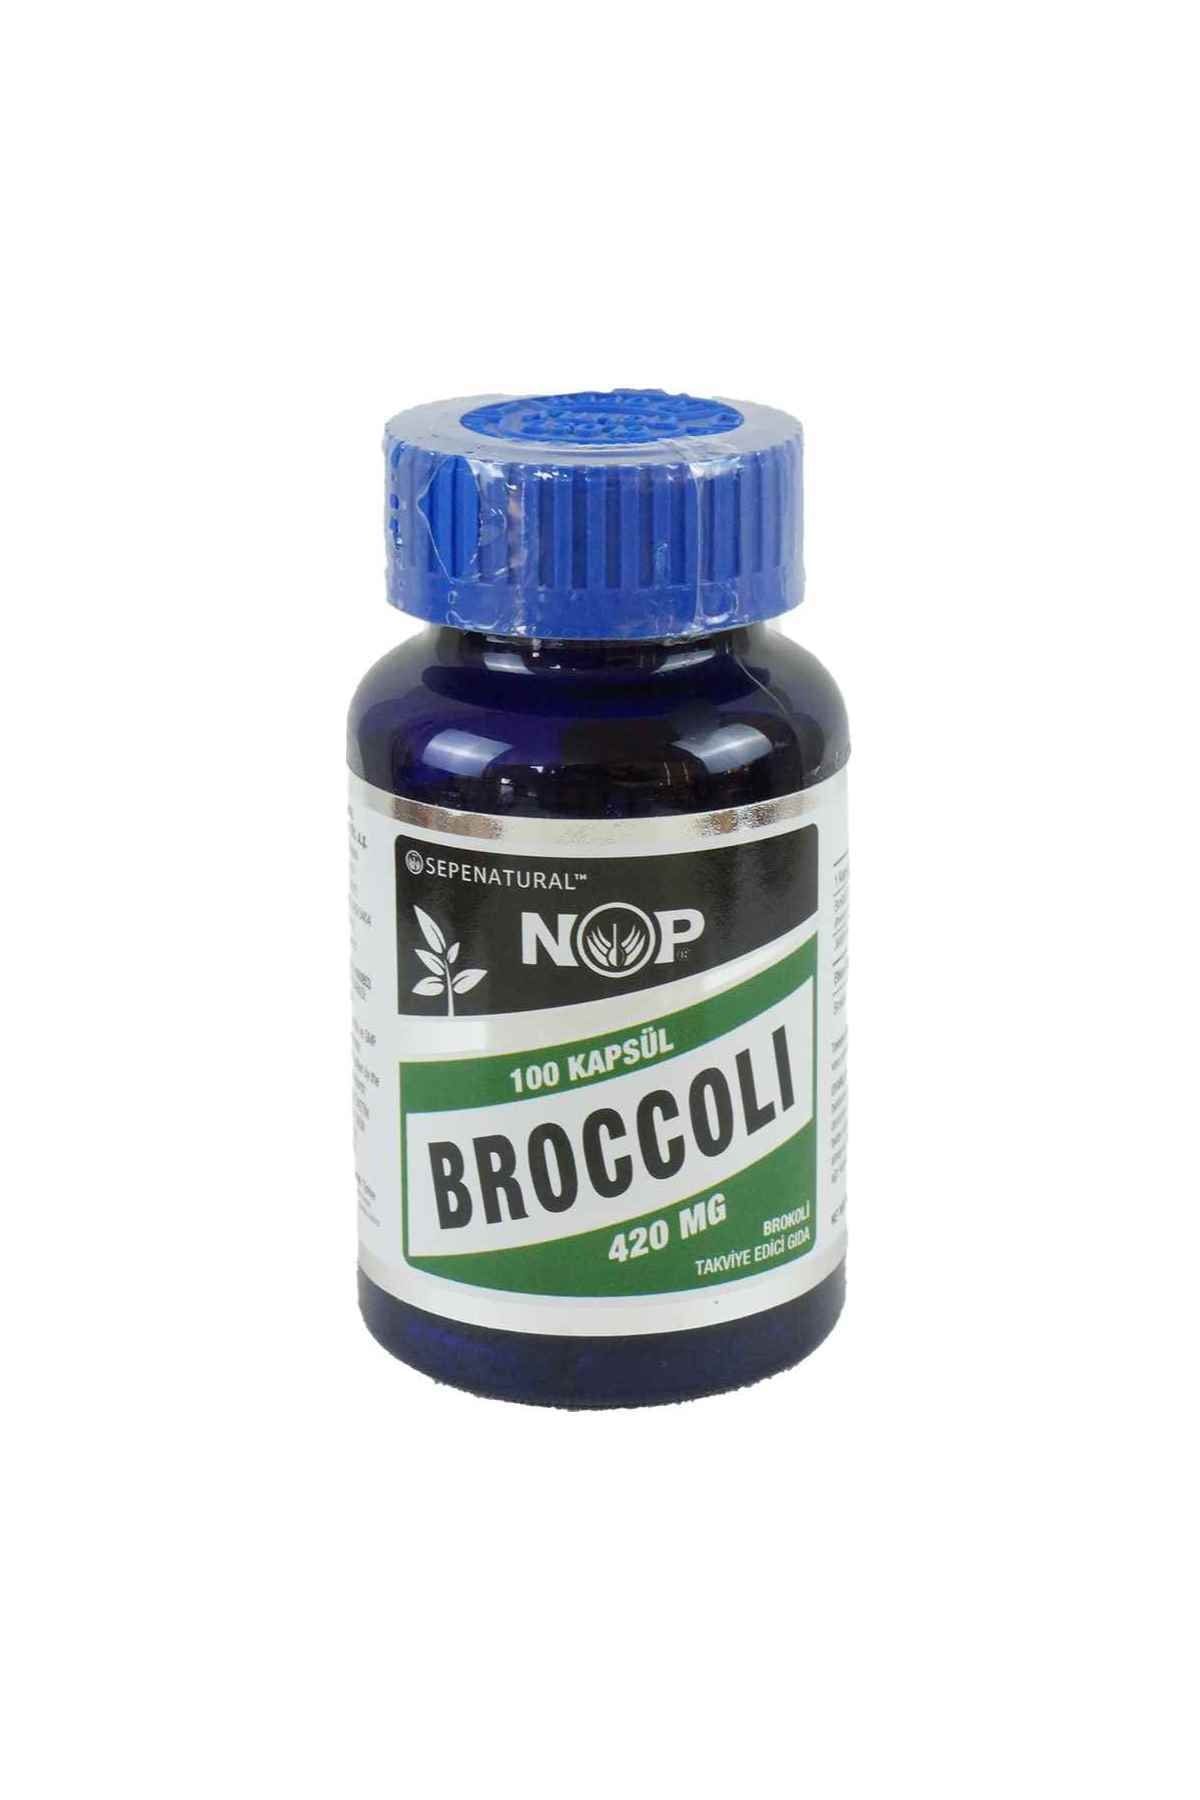 Sepe Natural Nop Brokoli Takviye Edici Gıda 100 Kapsül Broccoli